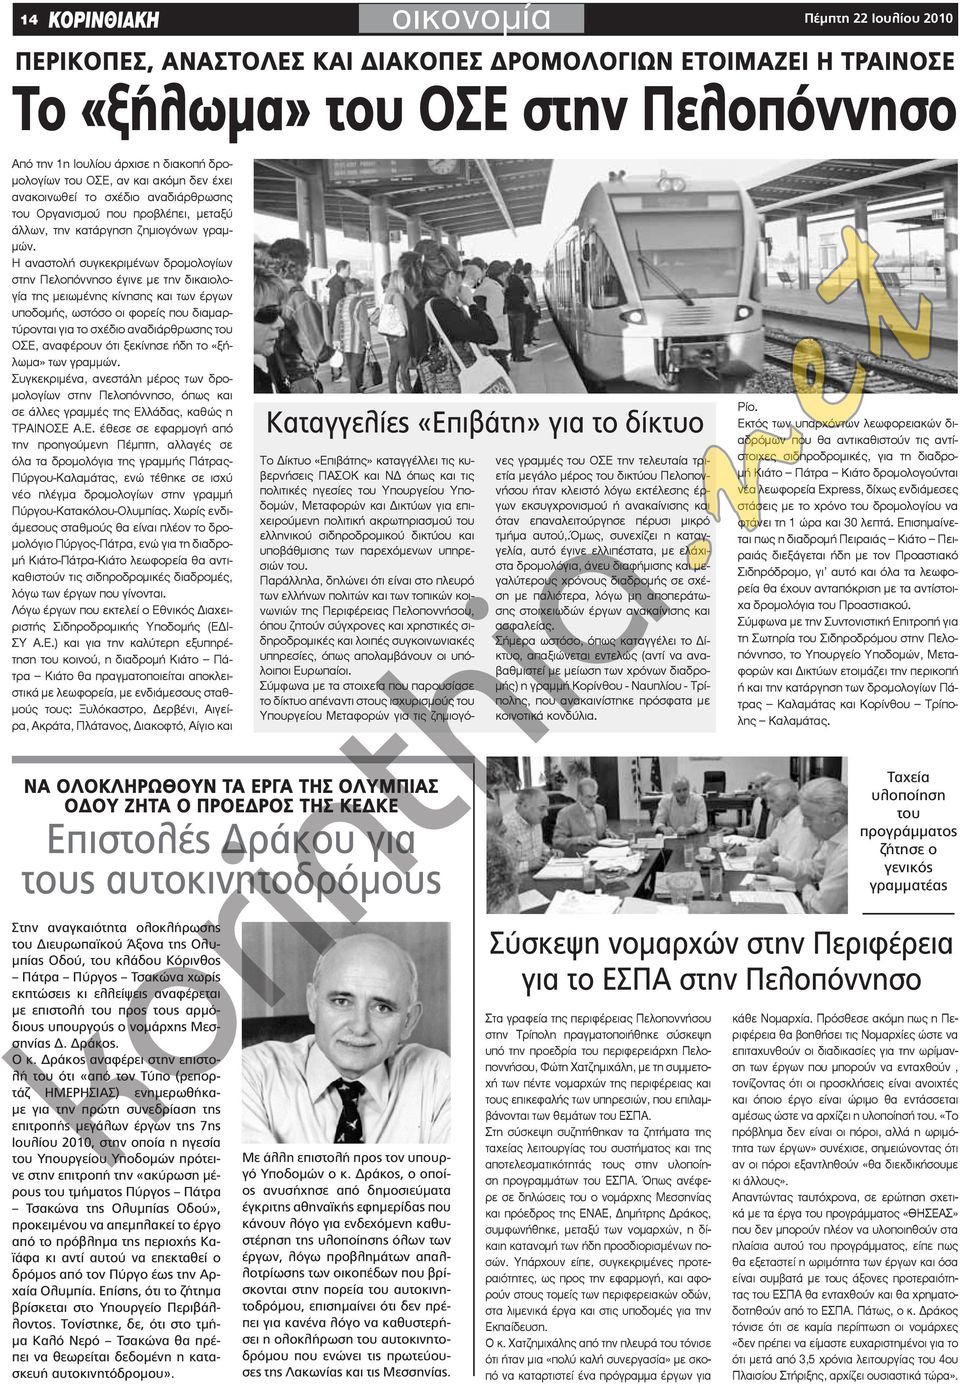 Η αναστολή συγκεκριμένων δρομολογίων στην Πελοπόννησο έγινε με την δικαιολογία της μειωμένης κίνησης και των έργων υποδομής, ωστόσο οι φορείς που διαμαρτύρονται για το σχέδιο αναδιάρθρωσης του ΟΣΕ,